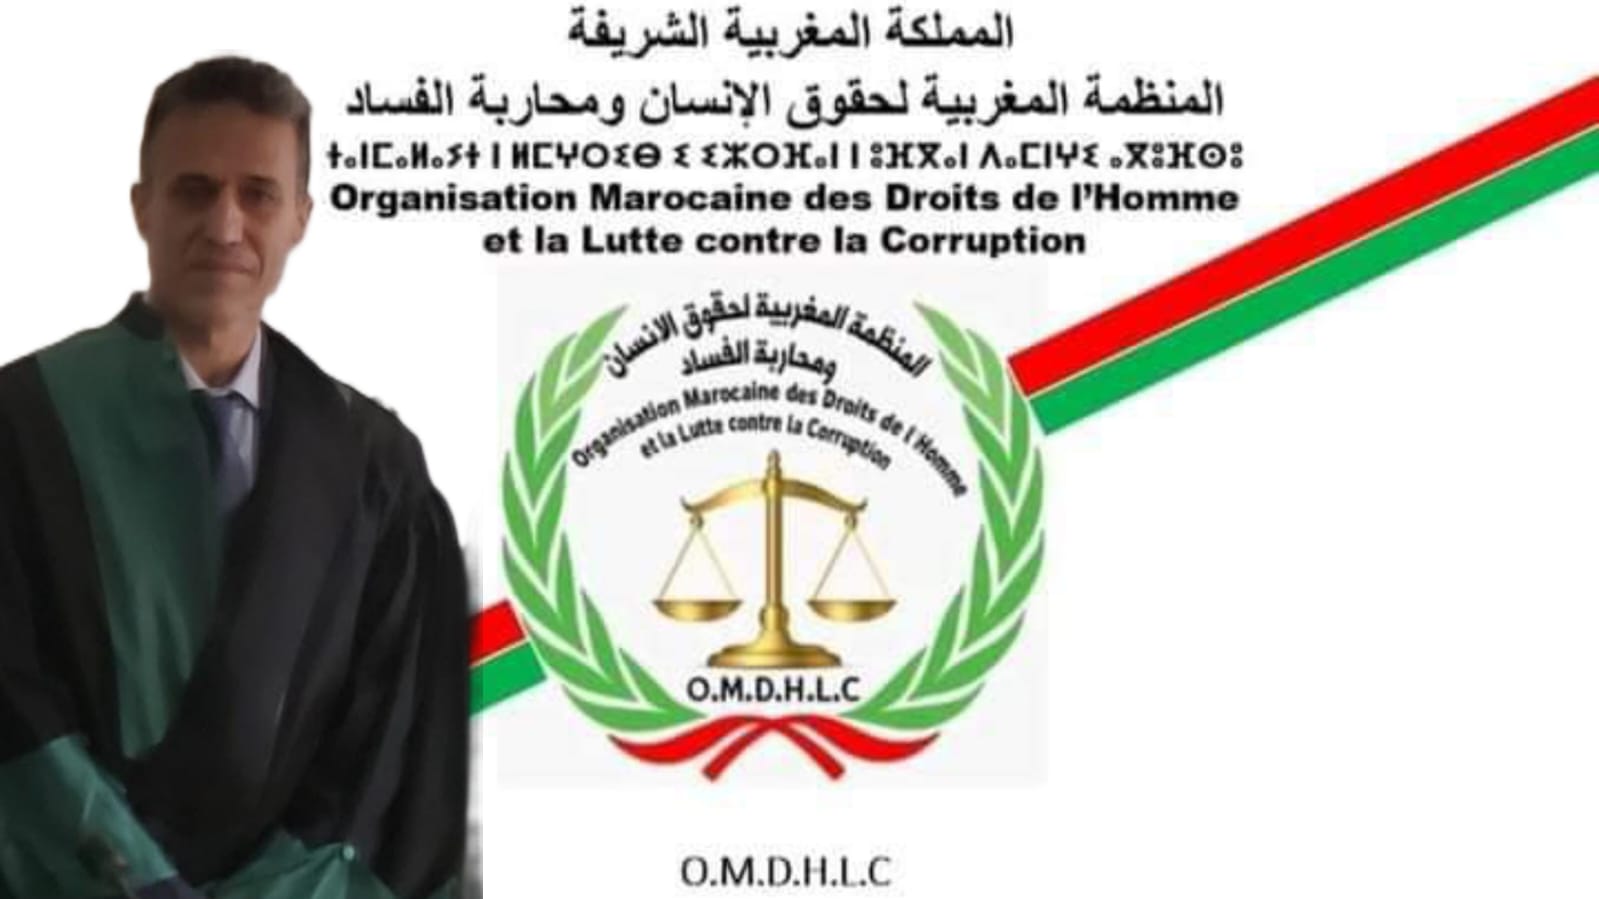 تعيين الدكتور حسن اليعقوبي مستشار قانوني للمنظمة المغربية لحقوق الإنسان ومحاربة الفساد.